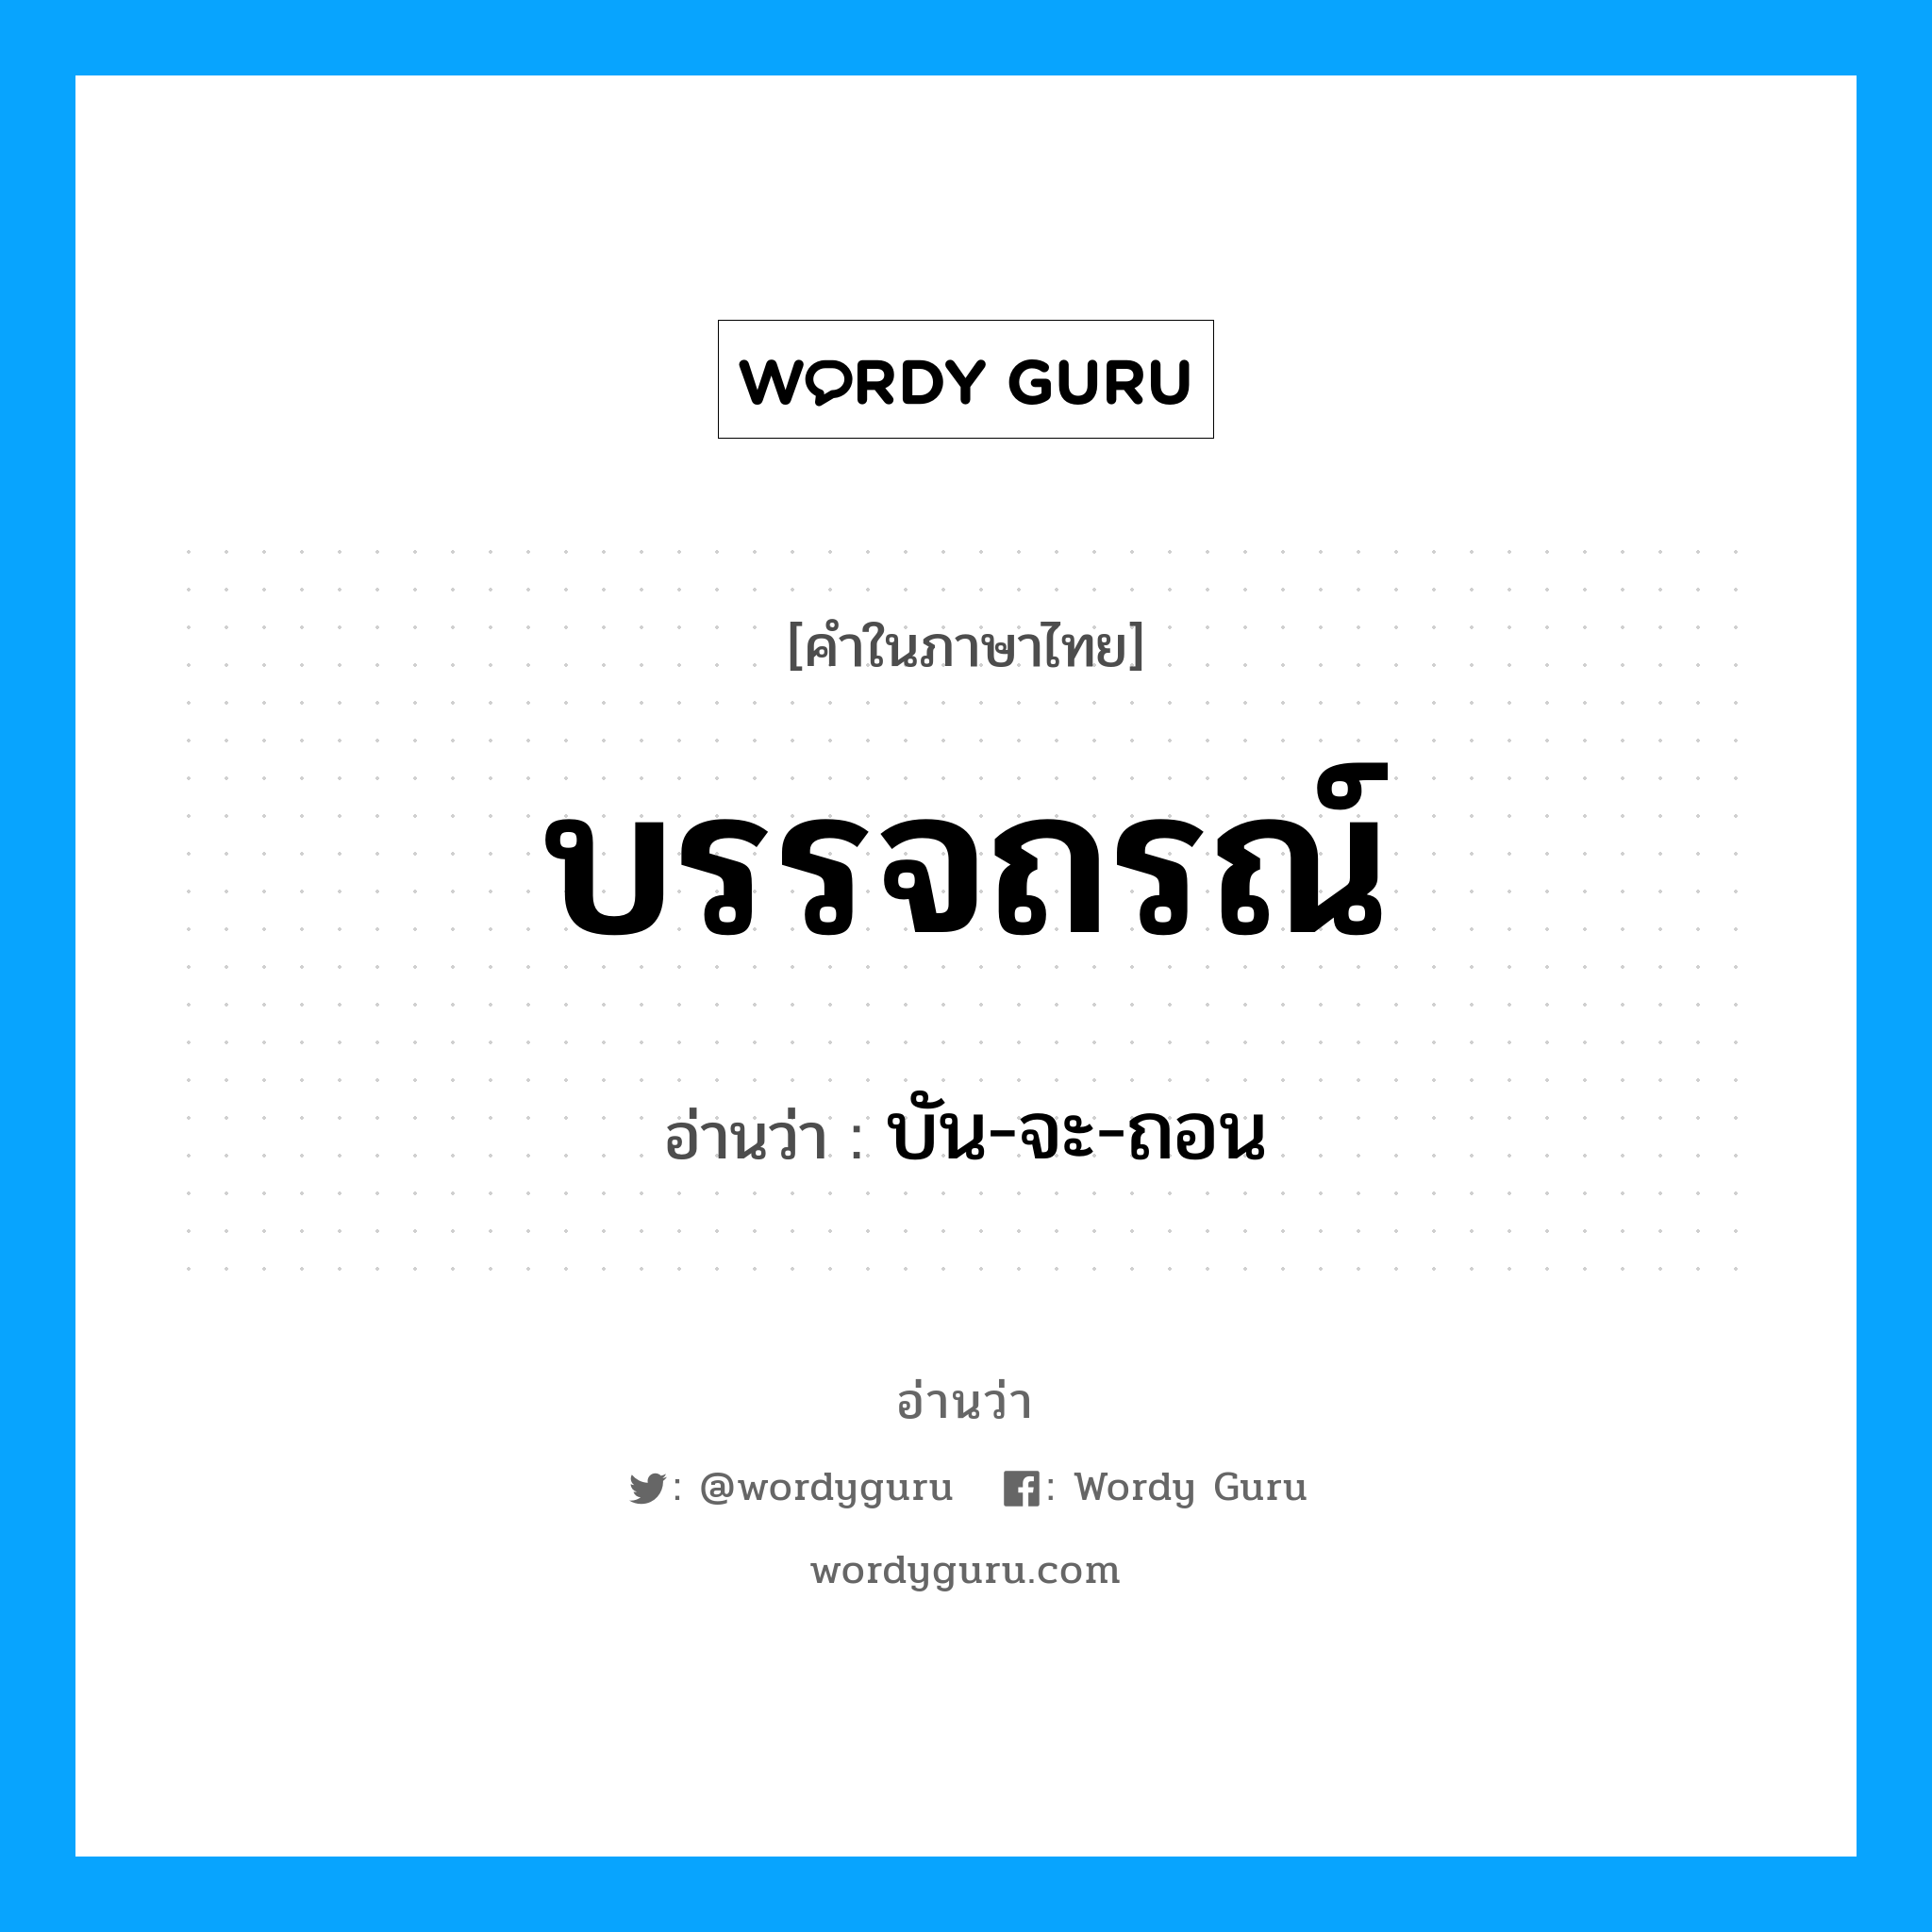 บัน-จะ-ถอน เป็นคำอ่านของคำไหน?, คำในภาษาไทย บัน-จะ-ถอน อ่านว่า บรรจถรณ์